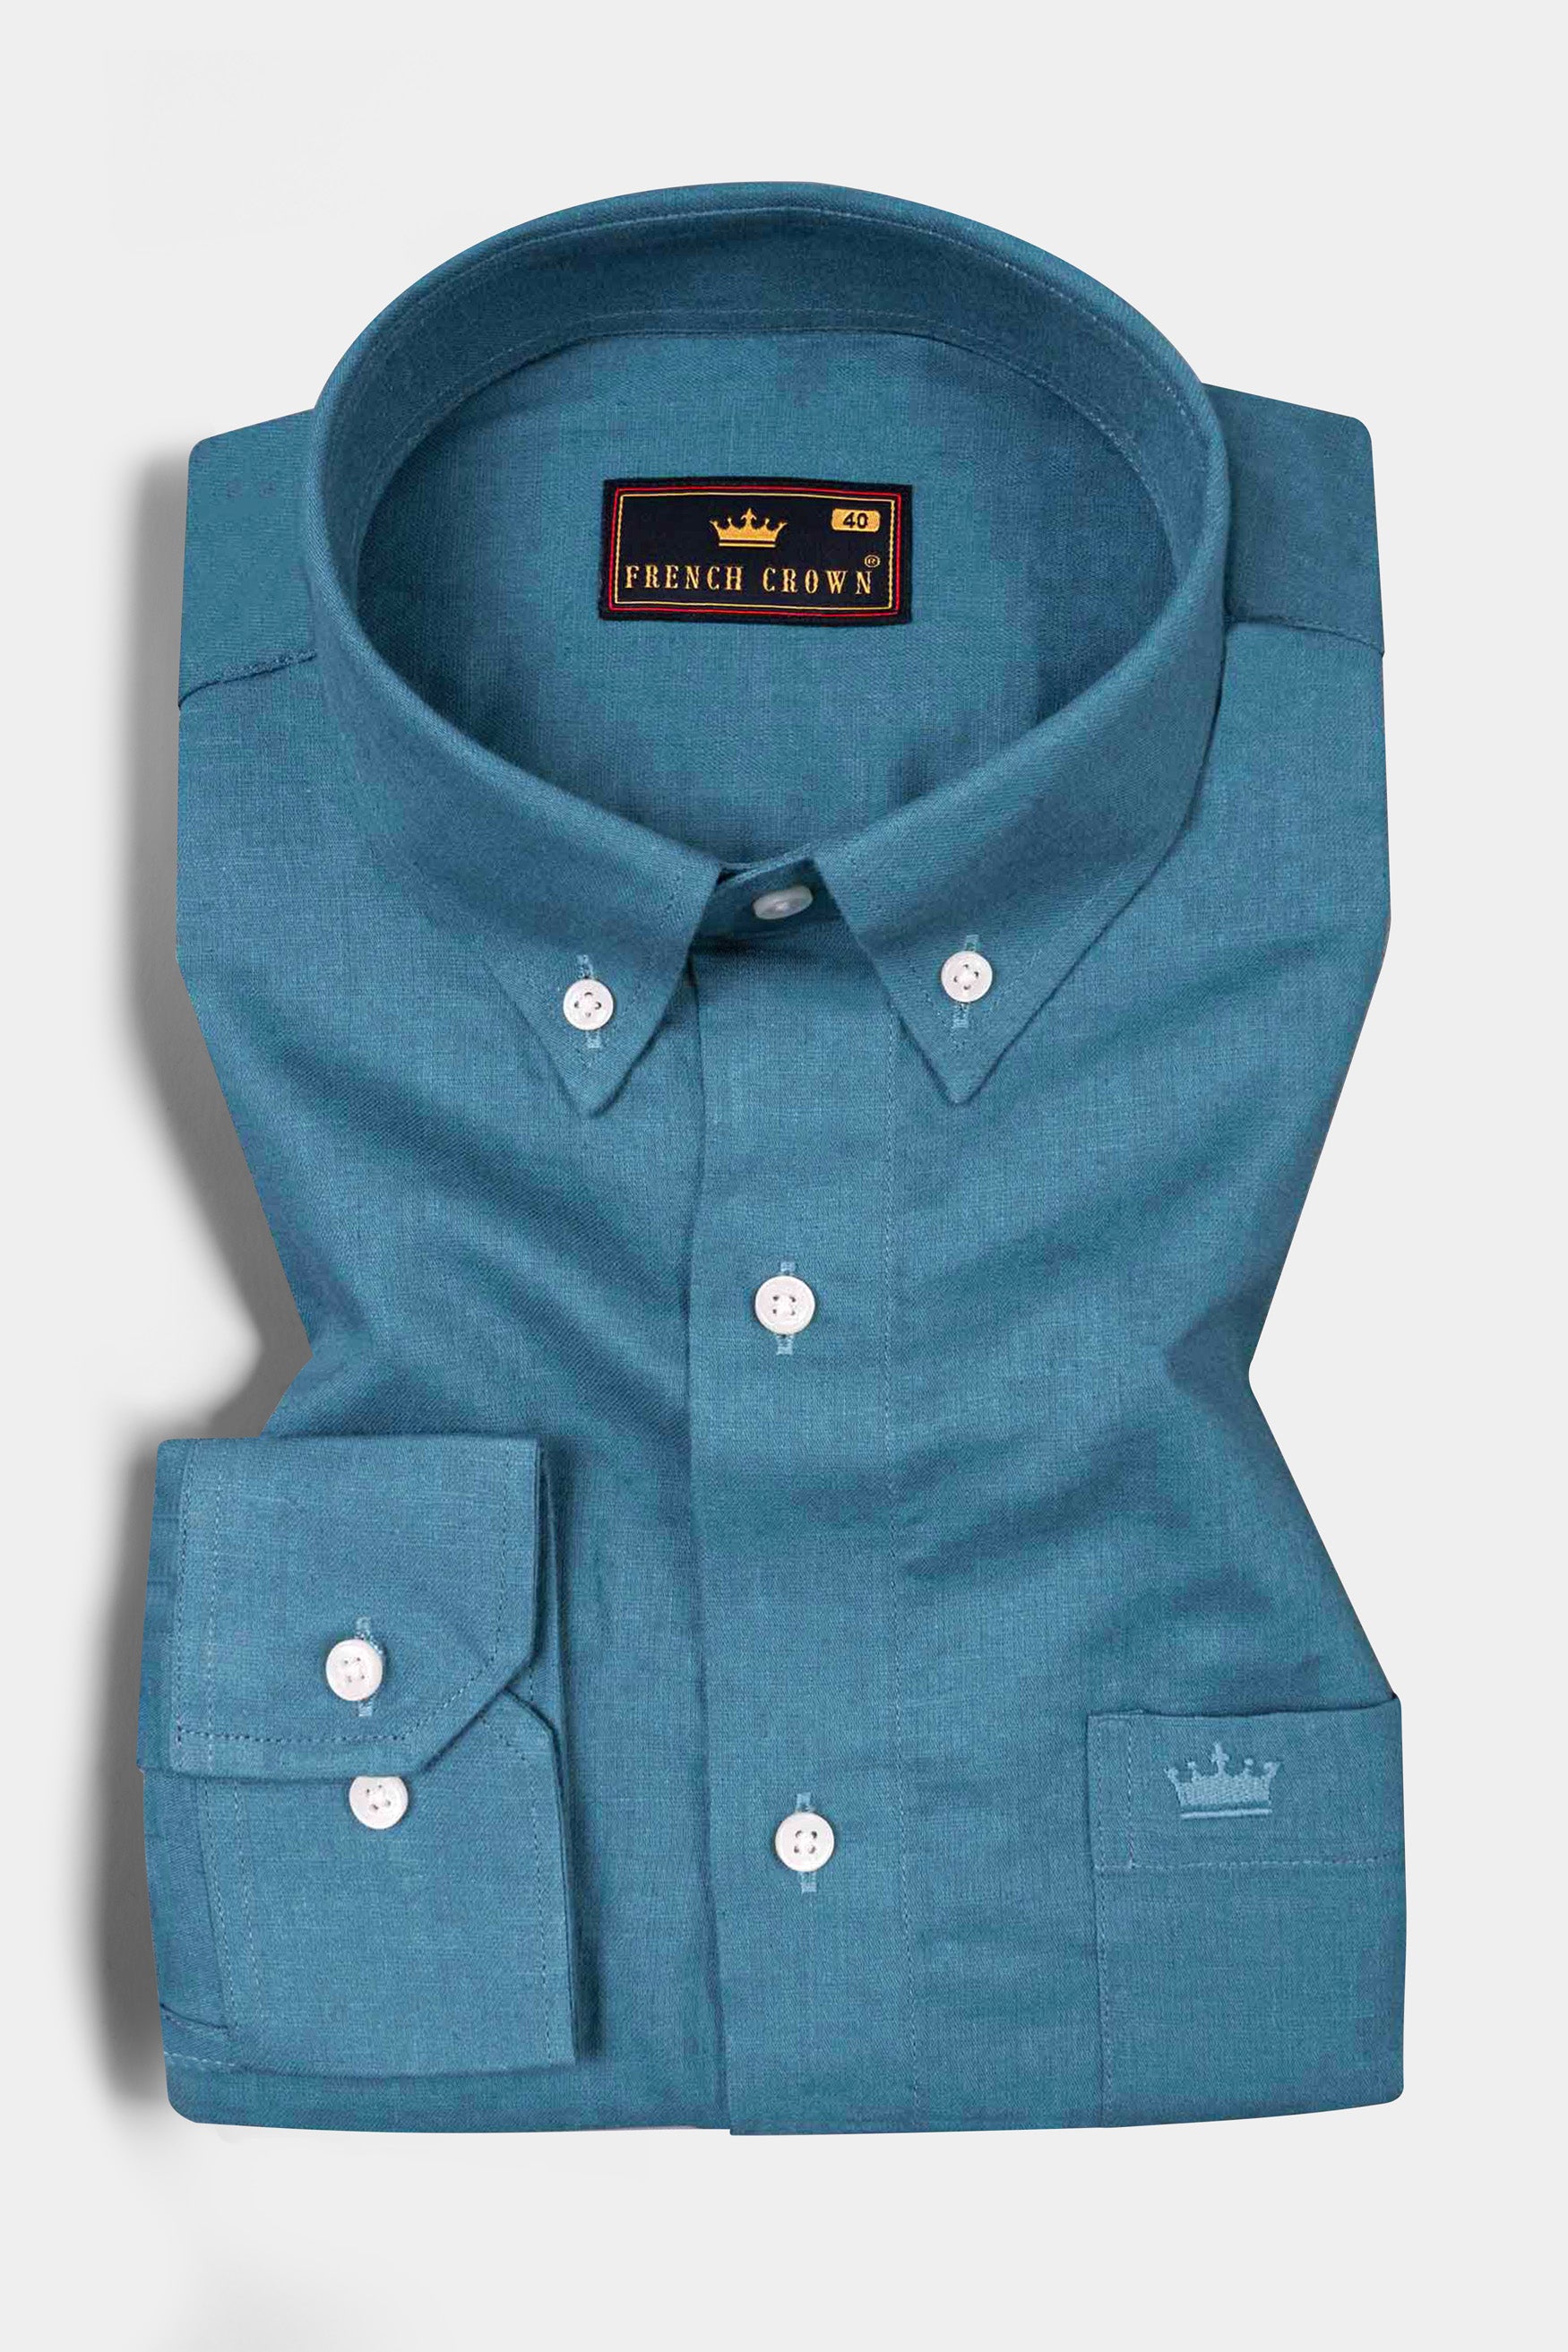 Matisse Blue Luxurious Linen Shirt